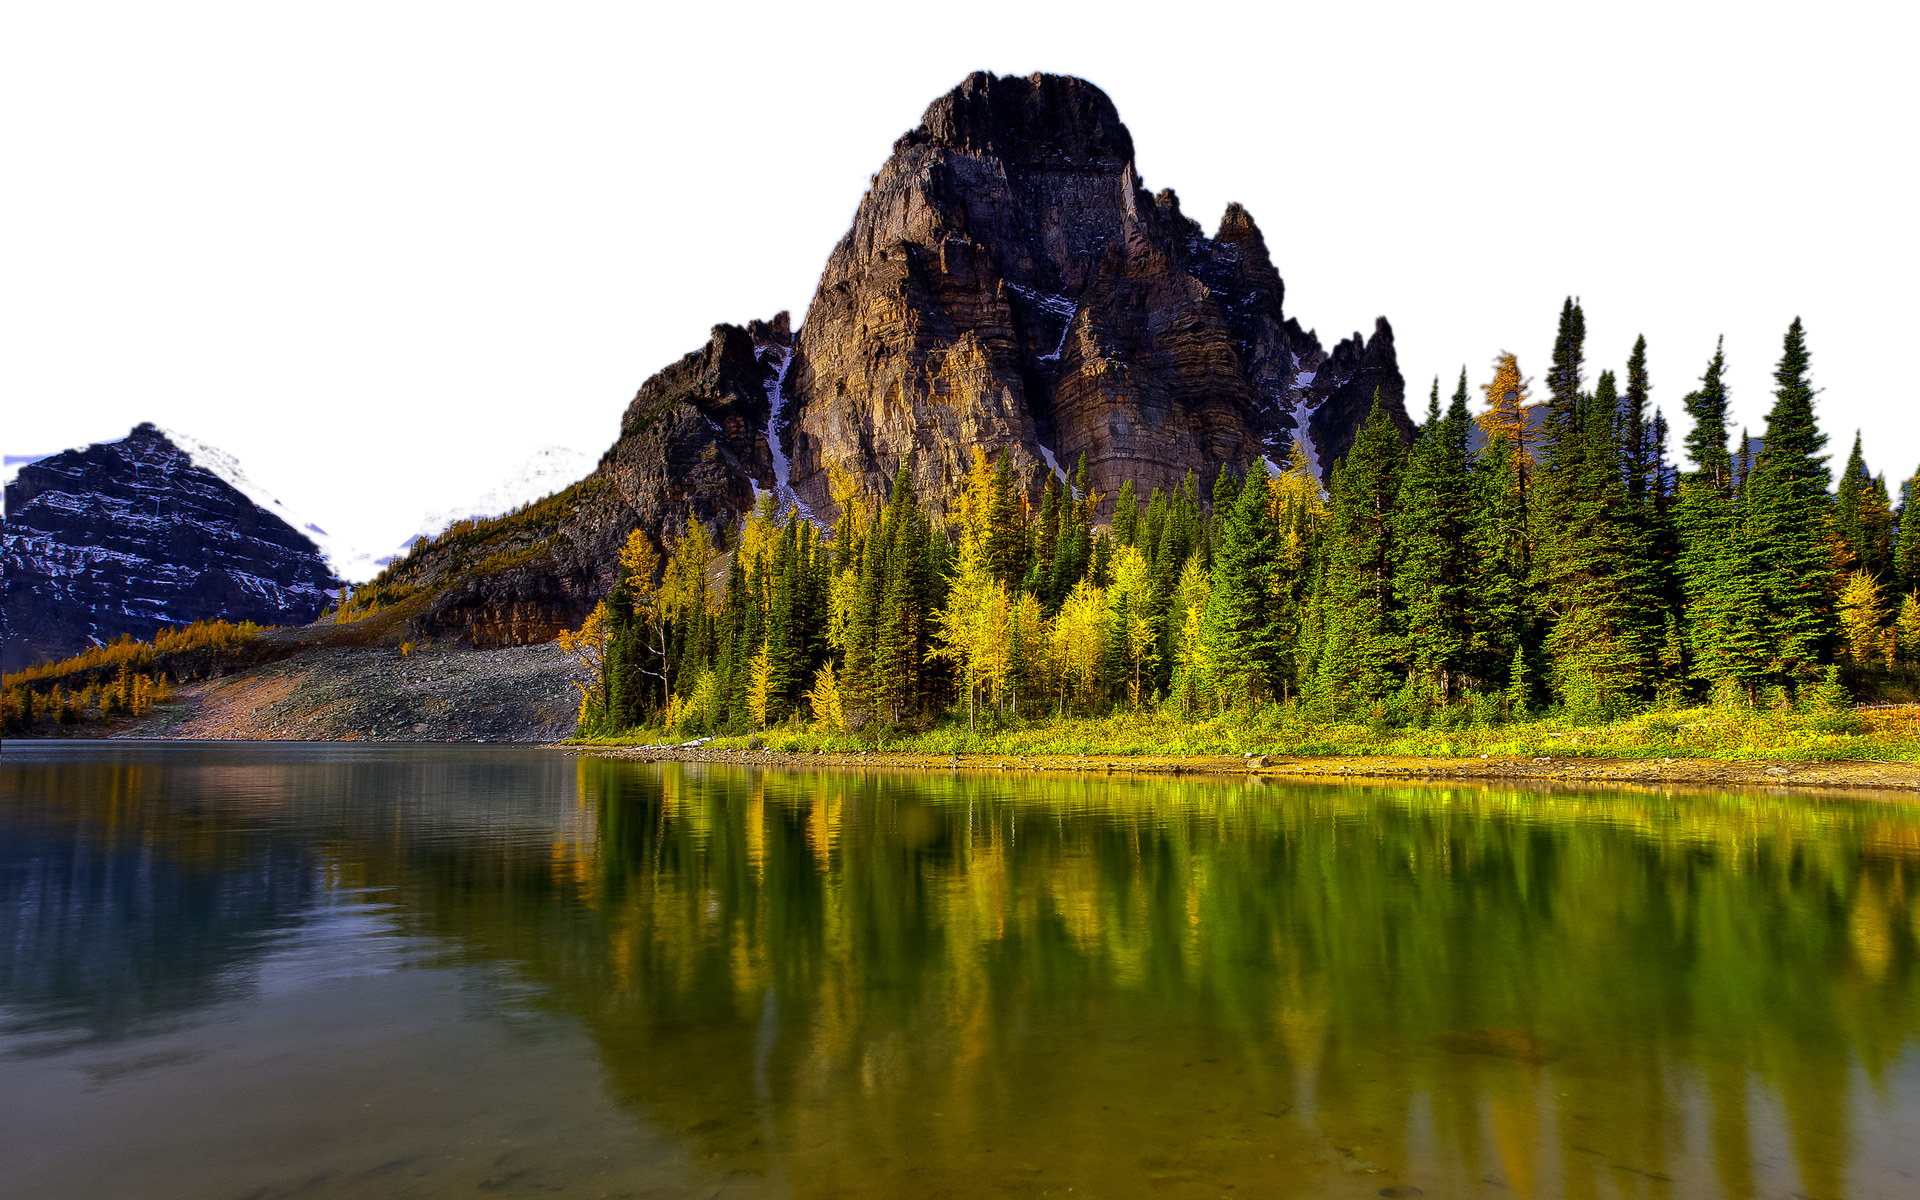 Summertime Landscape - Canada PNG Image